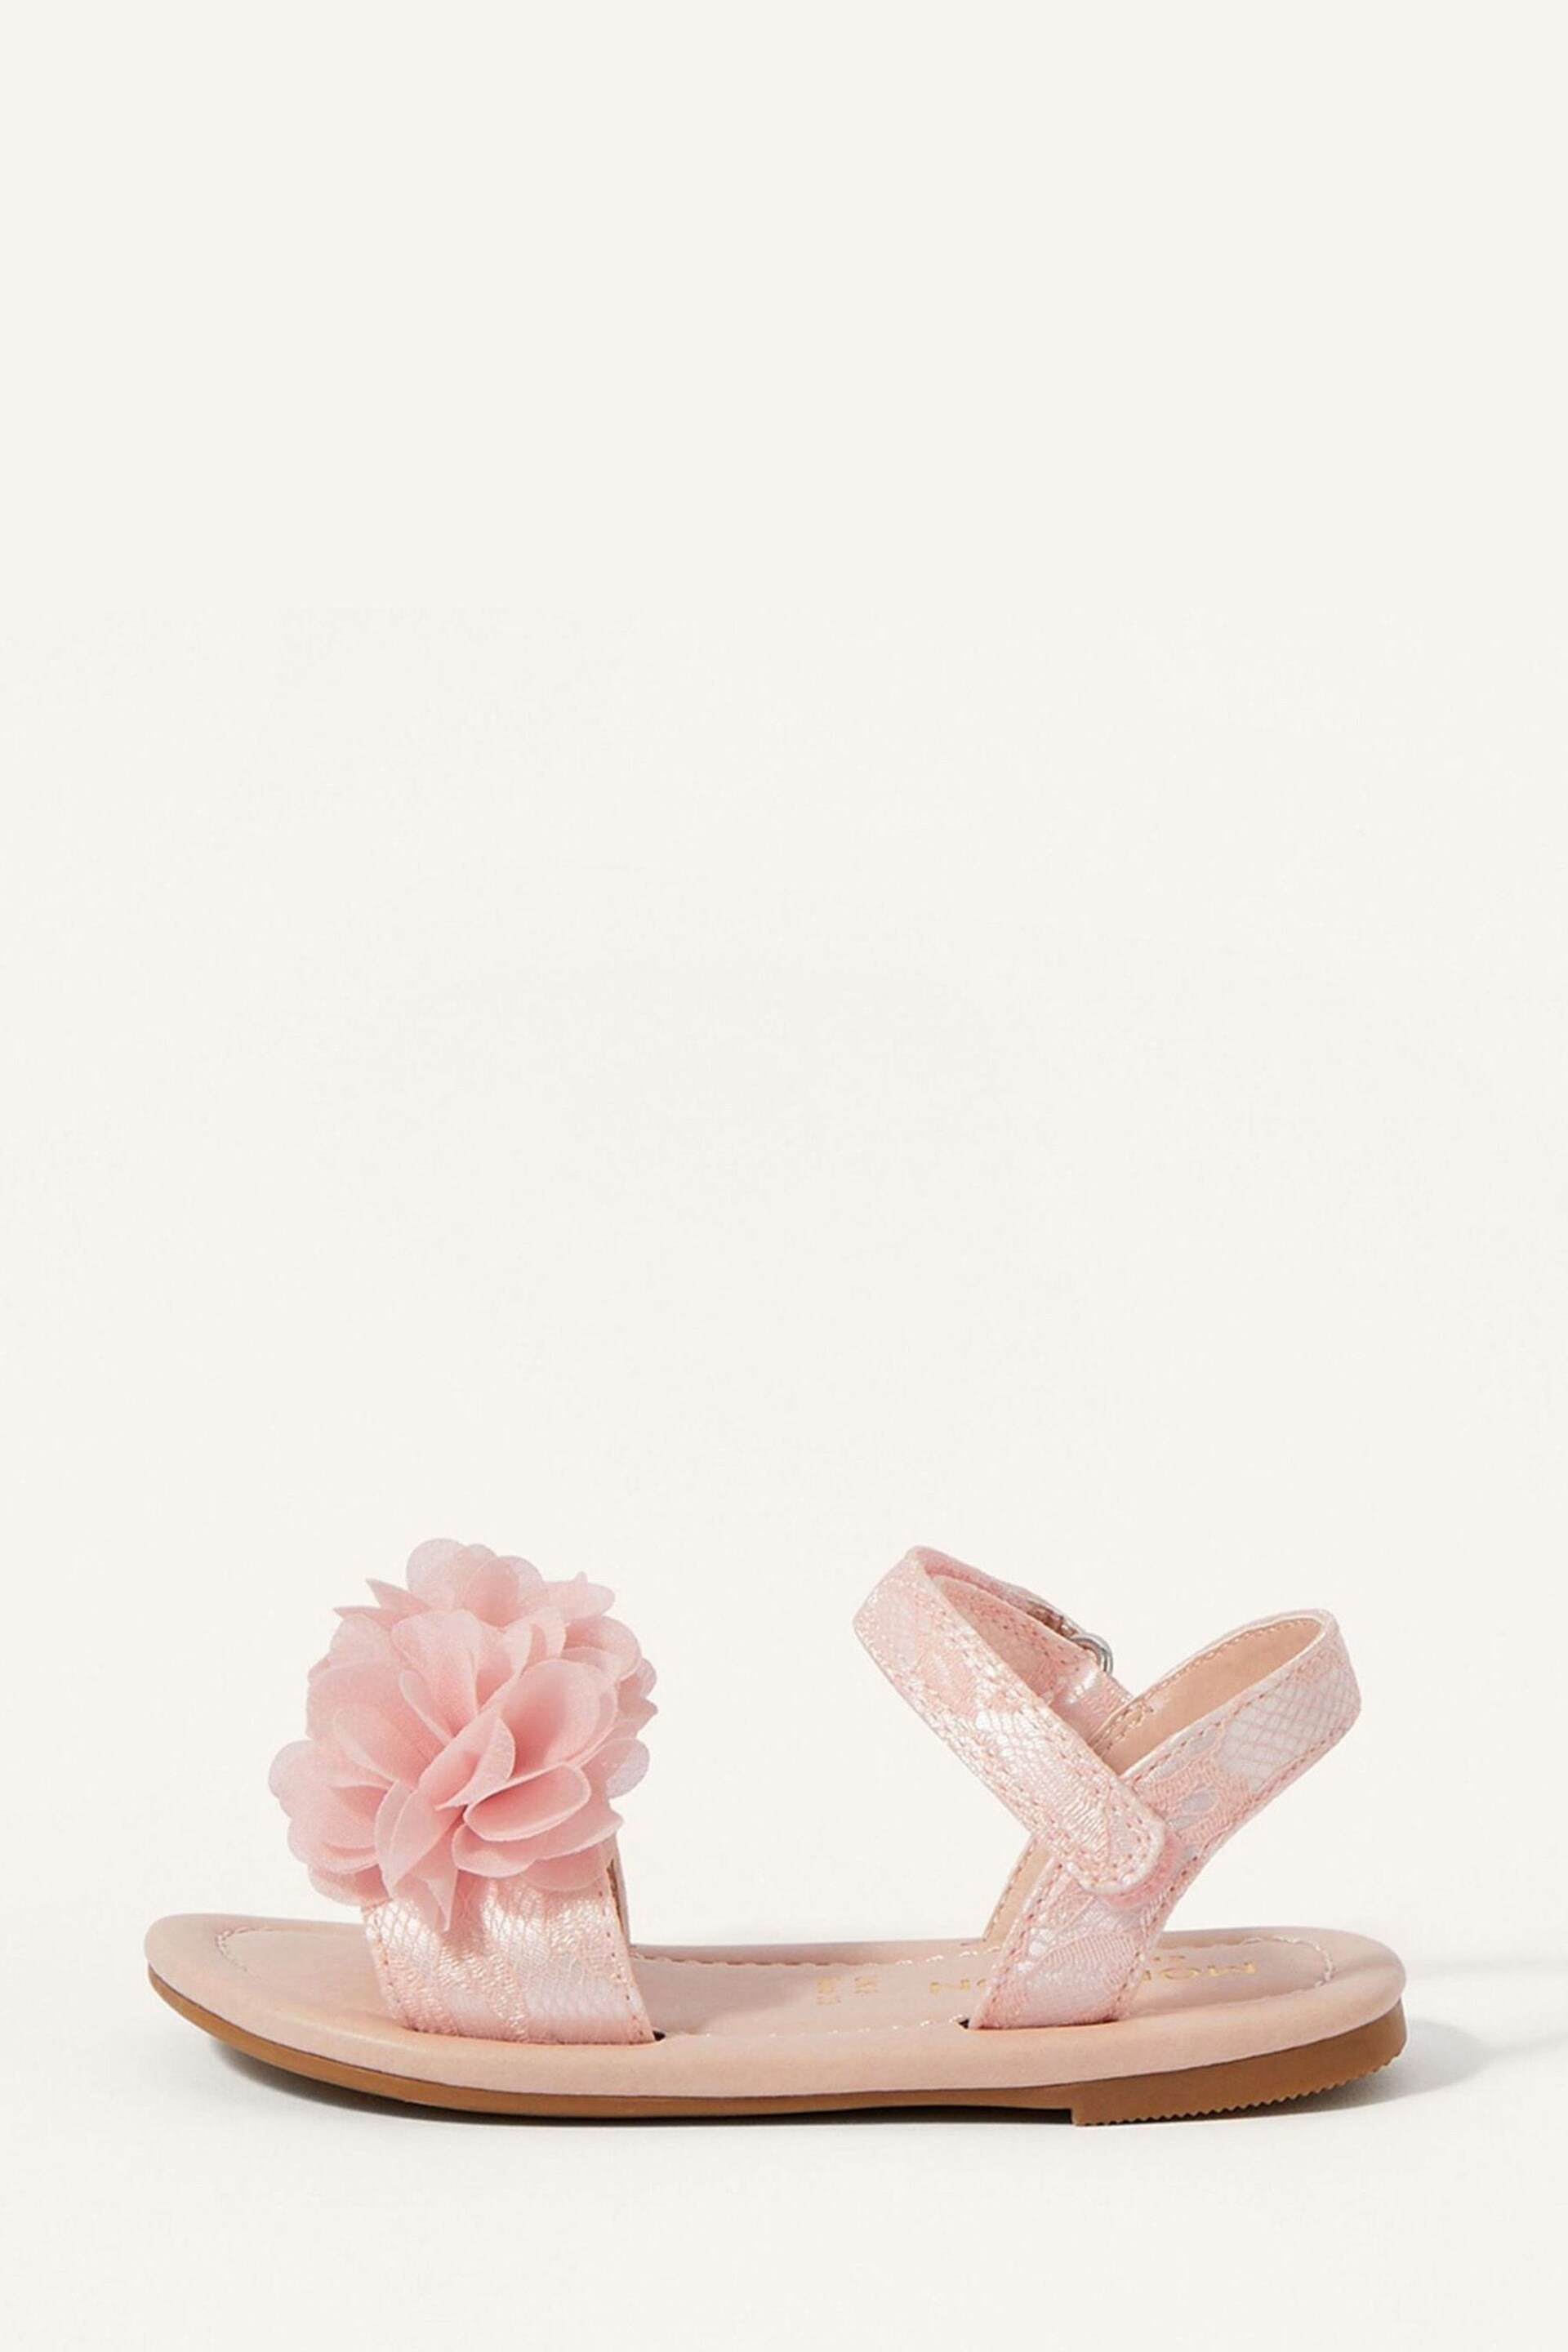 Monsoon Pink Shimmer Corsage Walker Sandals - Image 1 of 2